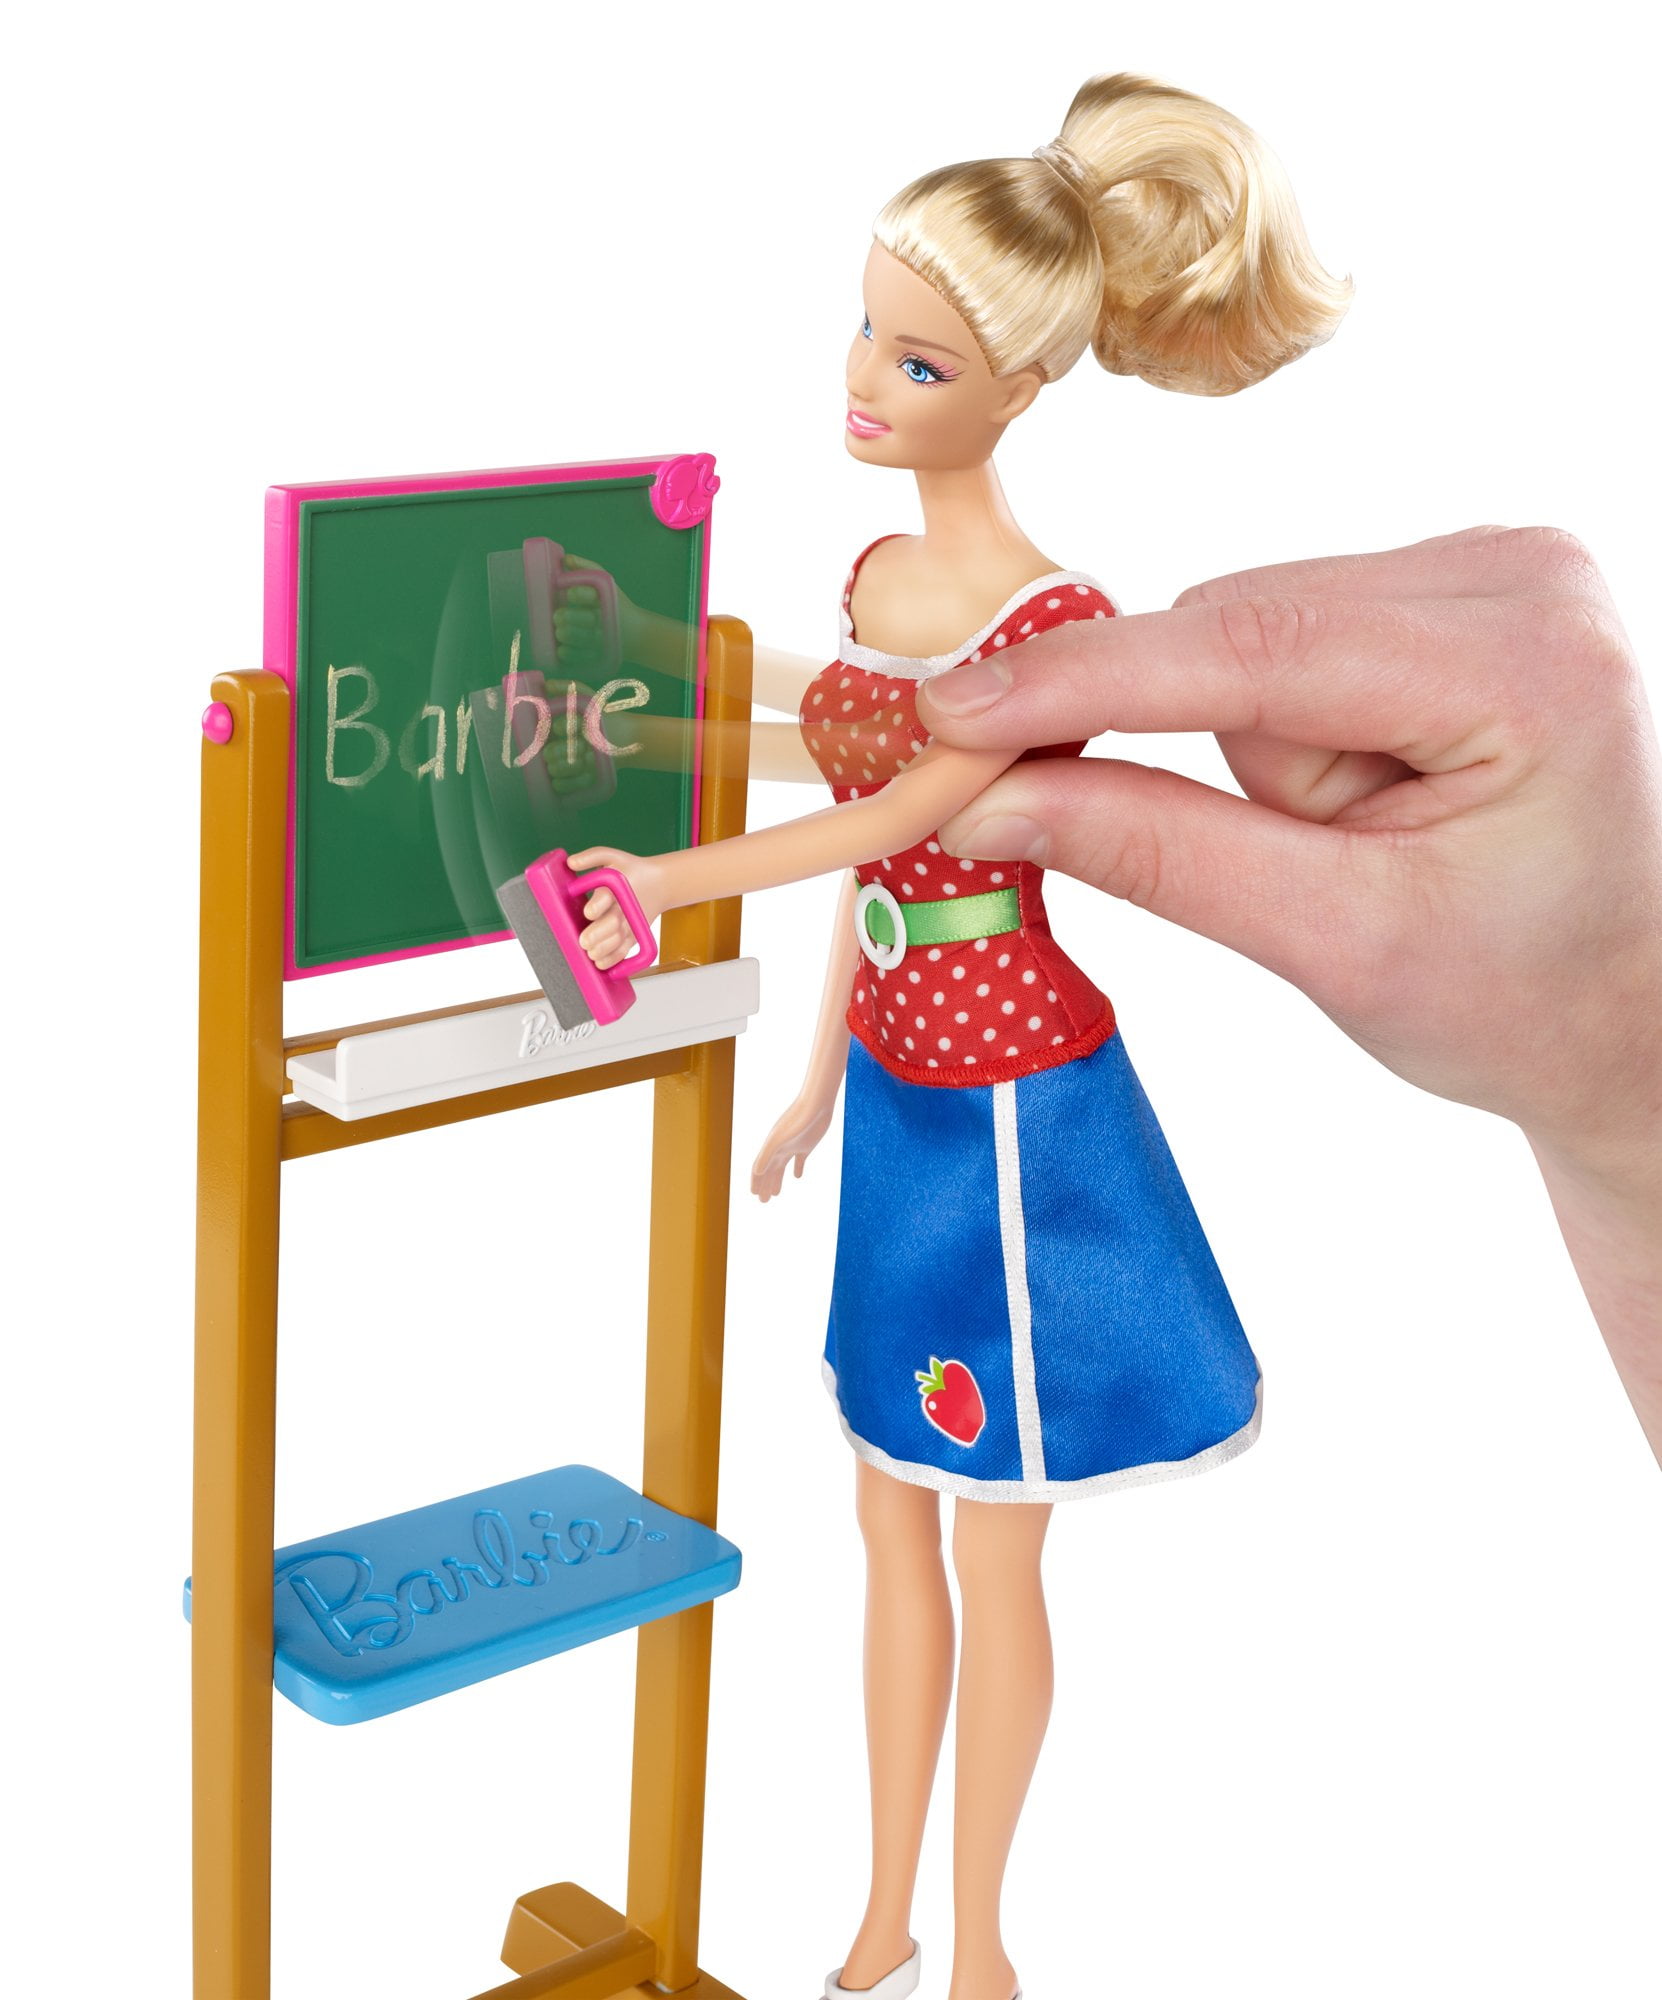 Barbie(バービー) I Can Be...Teacher ドール 人形 フィギュア